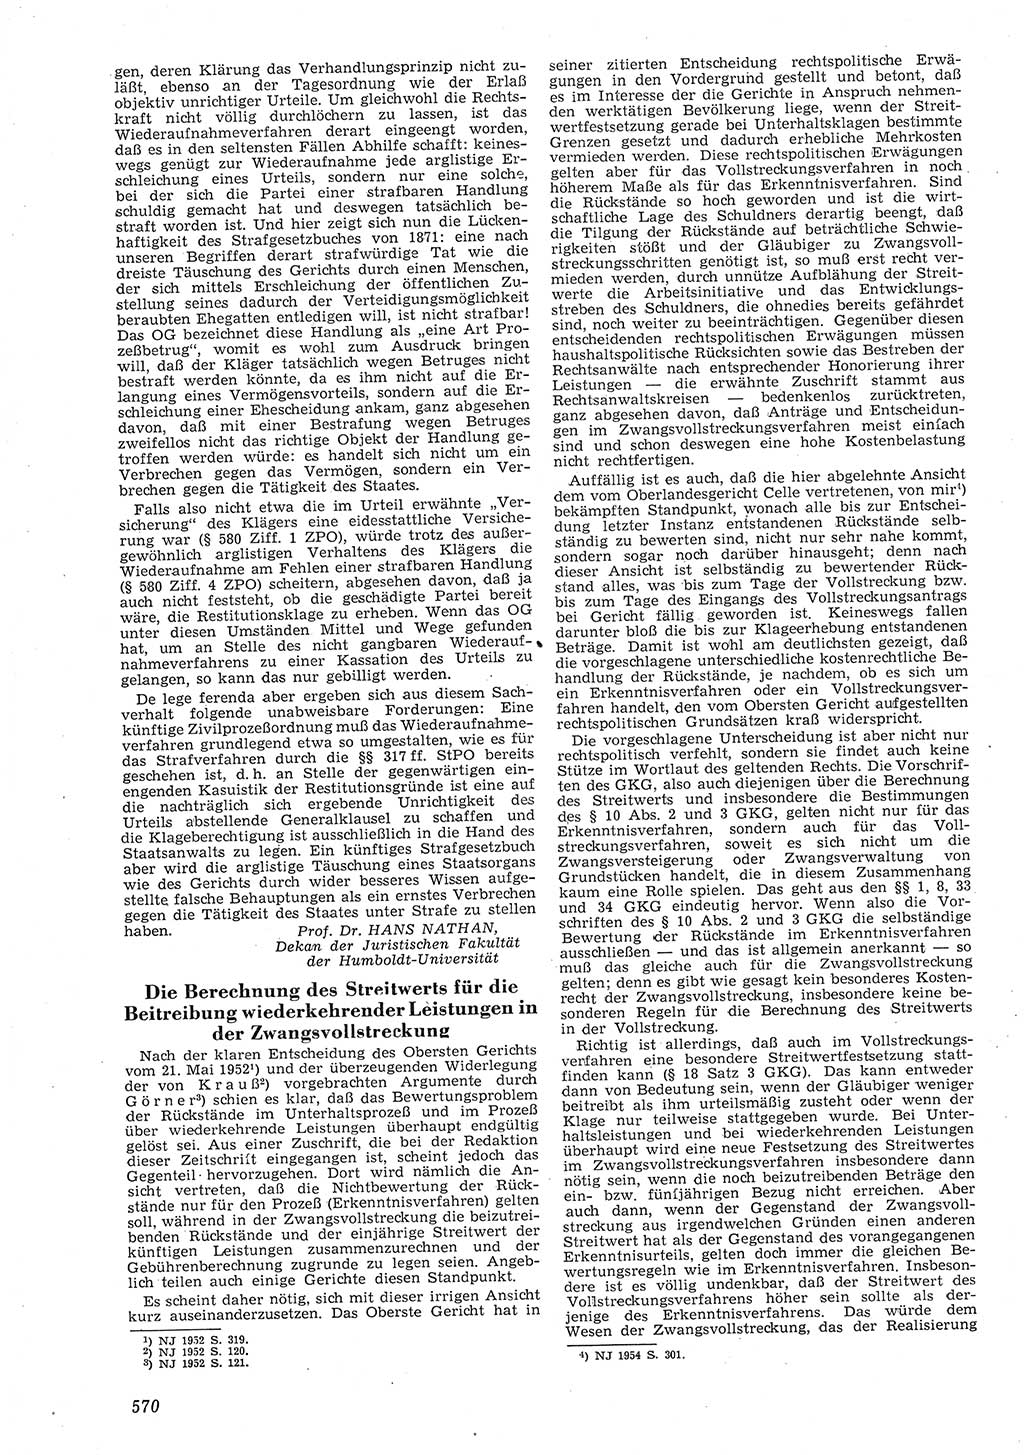 Neue Justiz (NJ), Zeitschrift für Recht und Rechtswissenschaft [Deutsche Demokratische Republik (DDR)], 8. Jahrgang 1954, Seite 570 (NJ DDR 1954, S. 570)